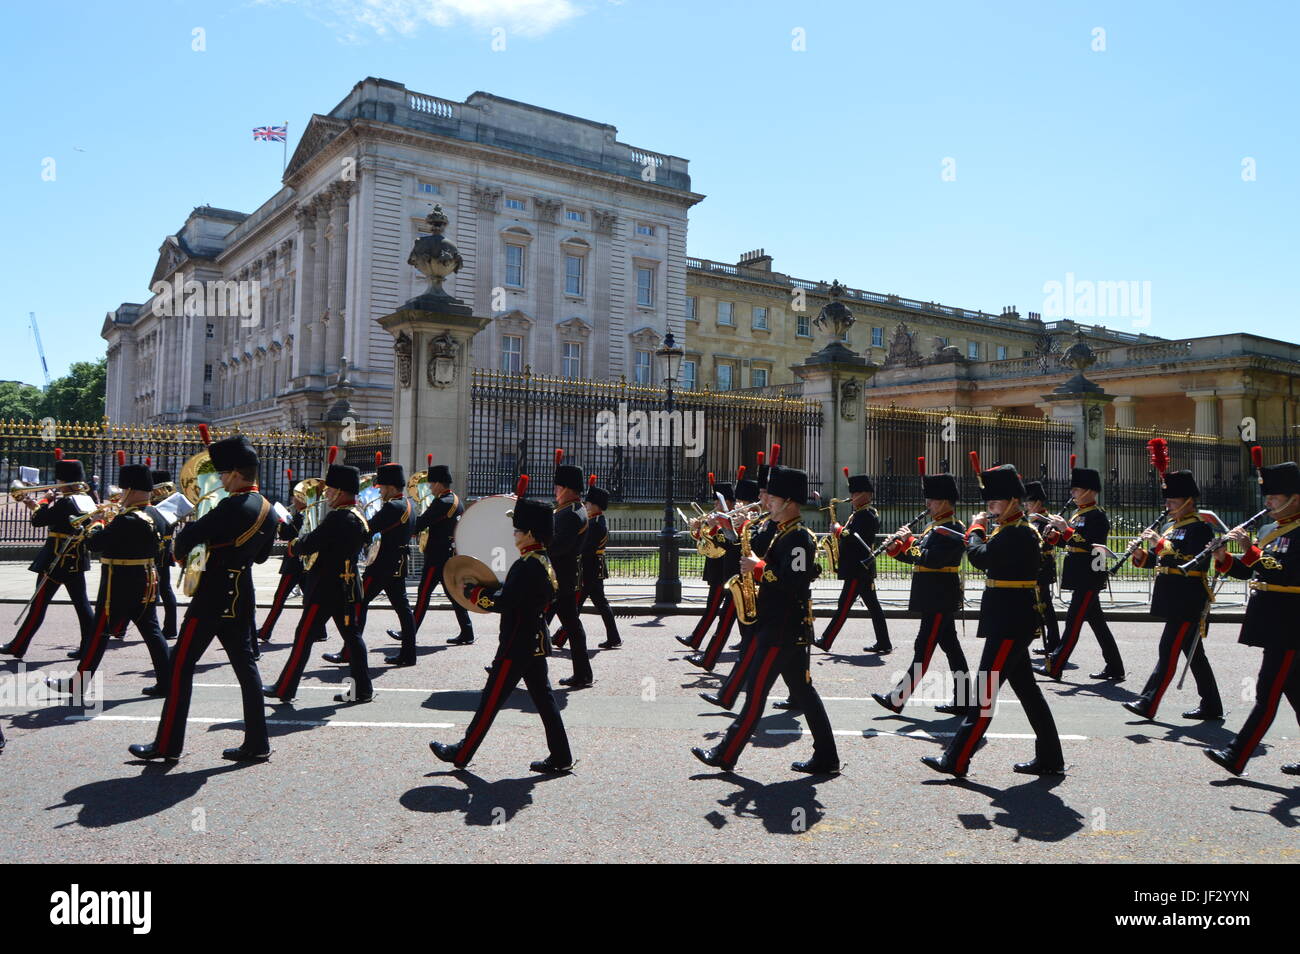 Stock Photo - 10 de junio de 2017. Las bandas militares masificada en marzo pasado el Palacio de Buckingham al final del ensayo de Queens desfile de cumpleaños Foto de stock